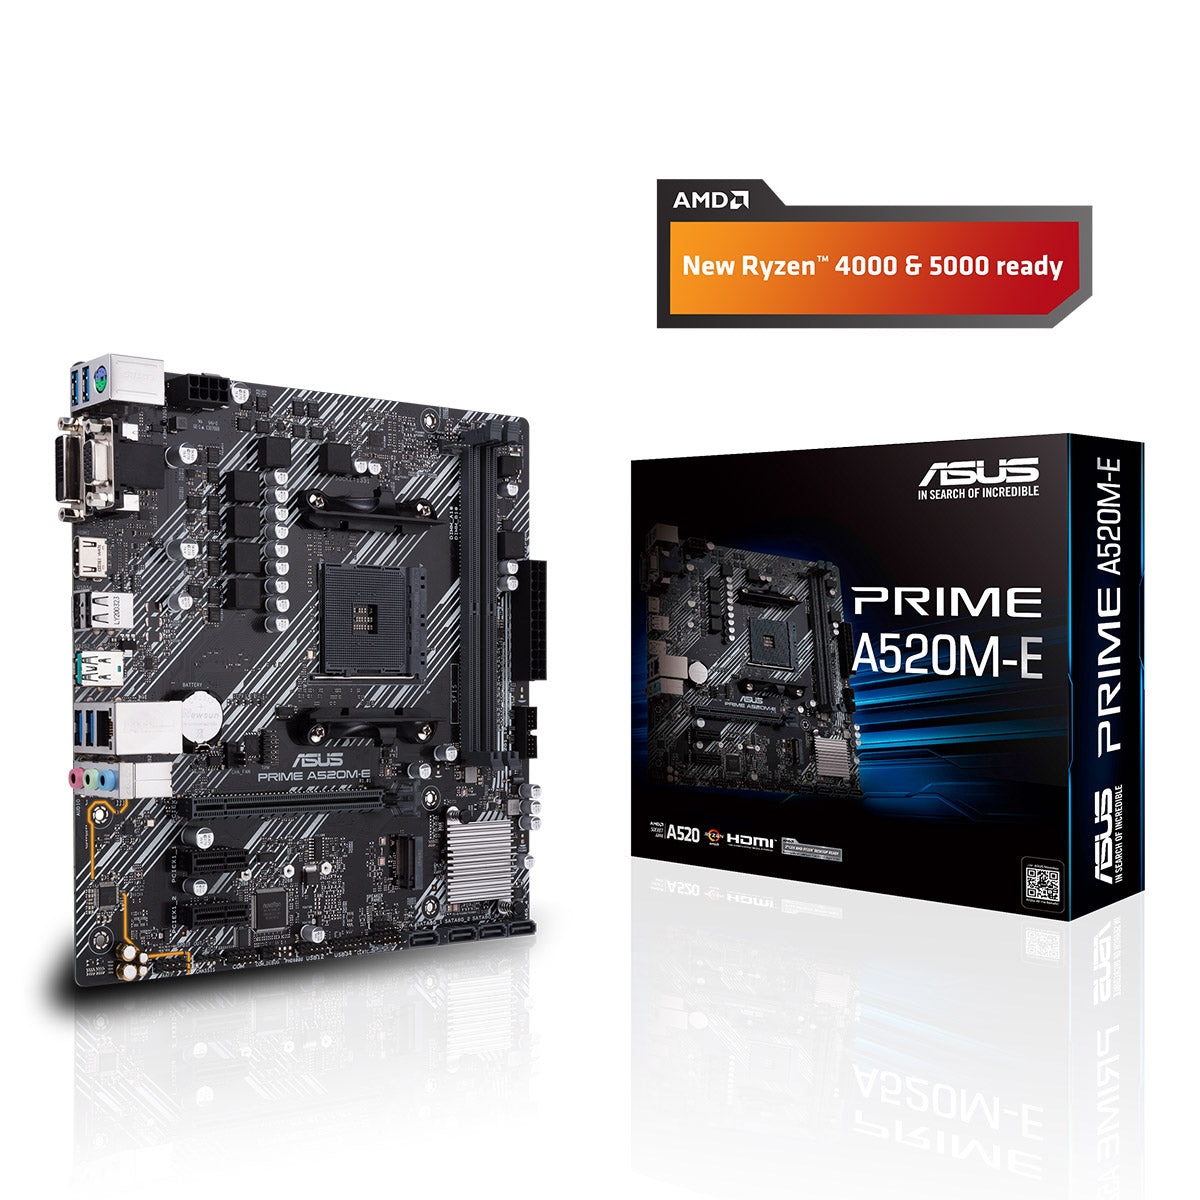 Asus Prime A520M-E AMD AM4 माइक्रो-ATX मदरबोर्ड DDR4 4866MHz M.2 और USB 3.2 Gen 2 के साथ 